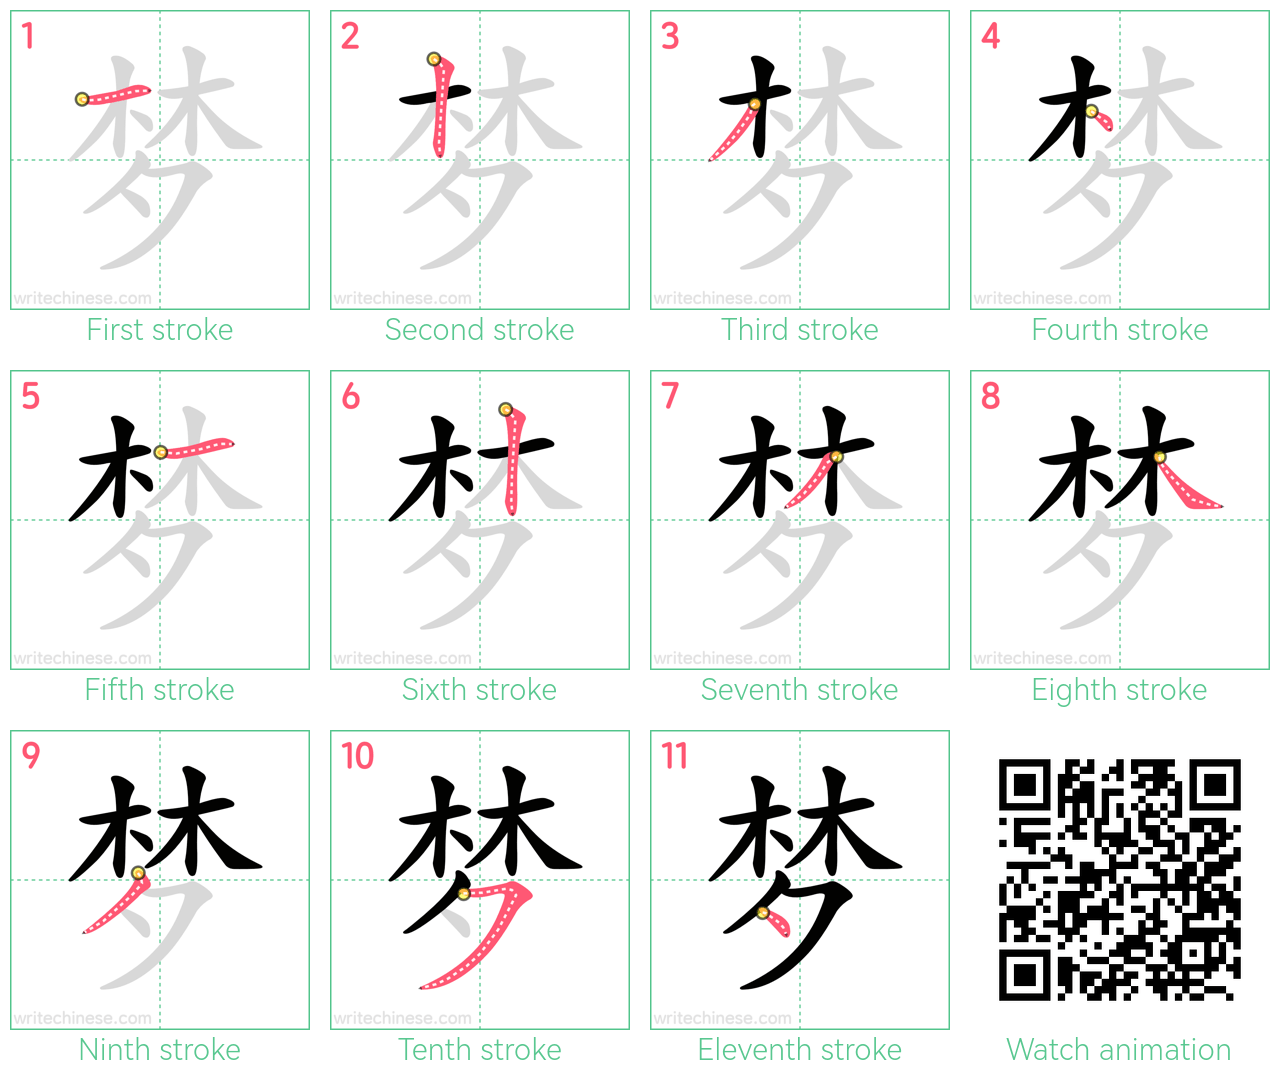 梦 step-by-step stroke order diagrams